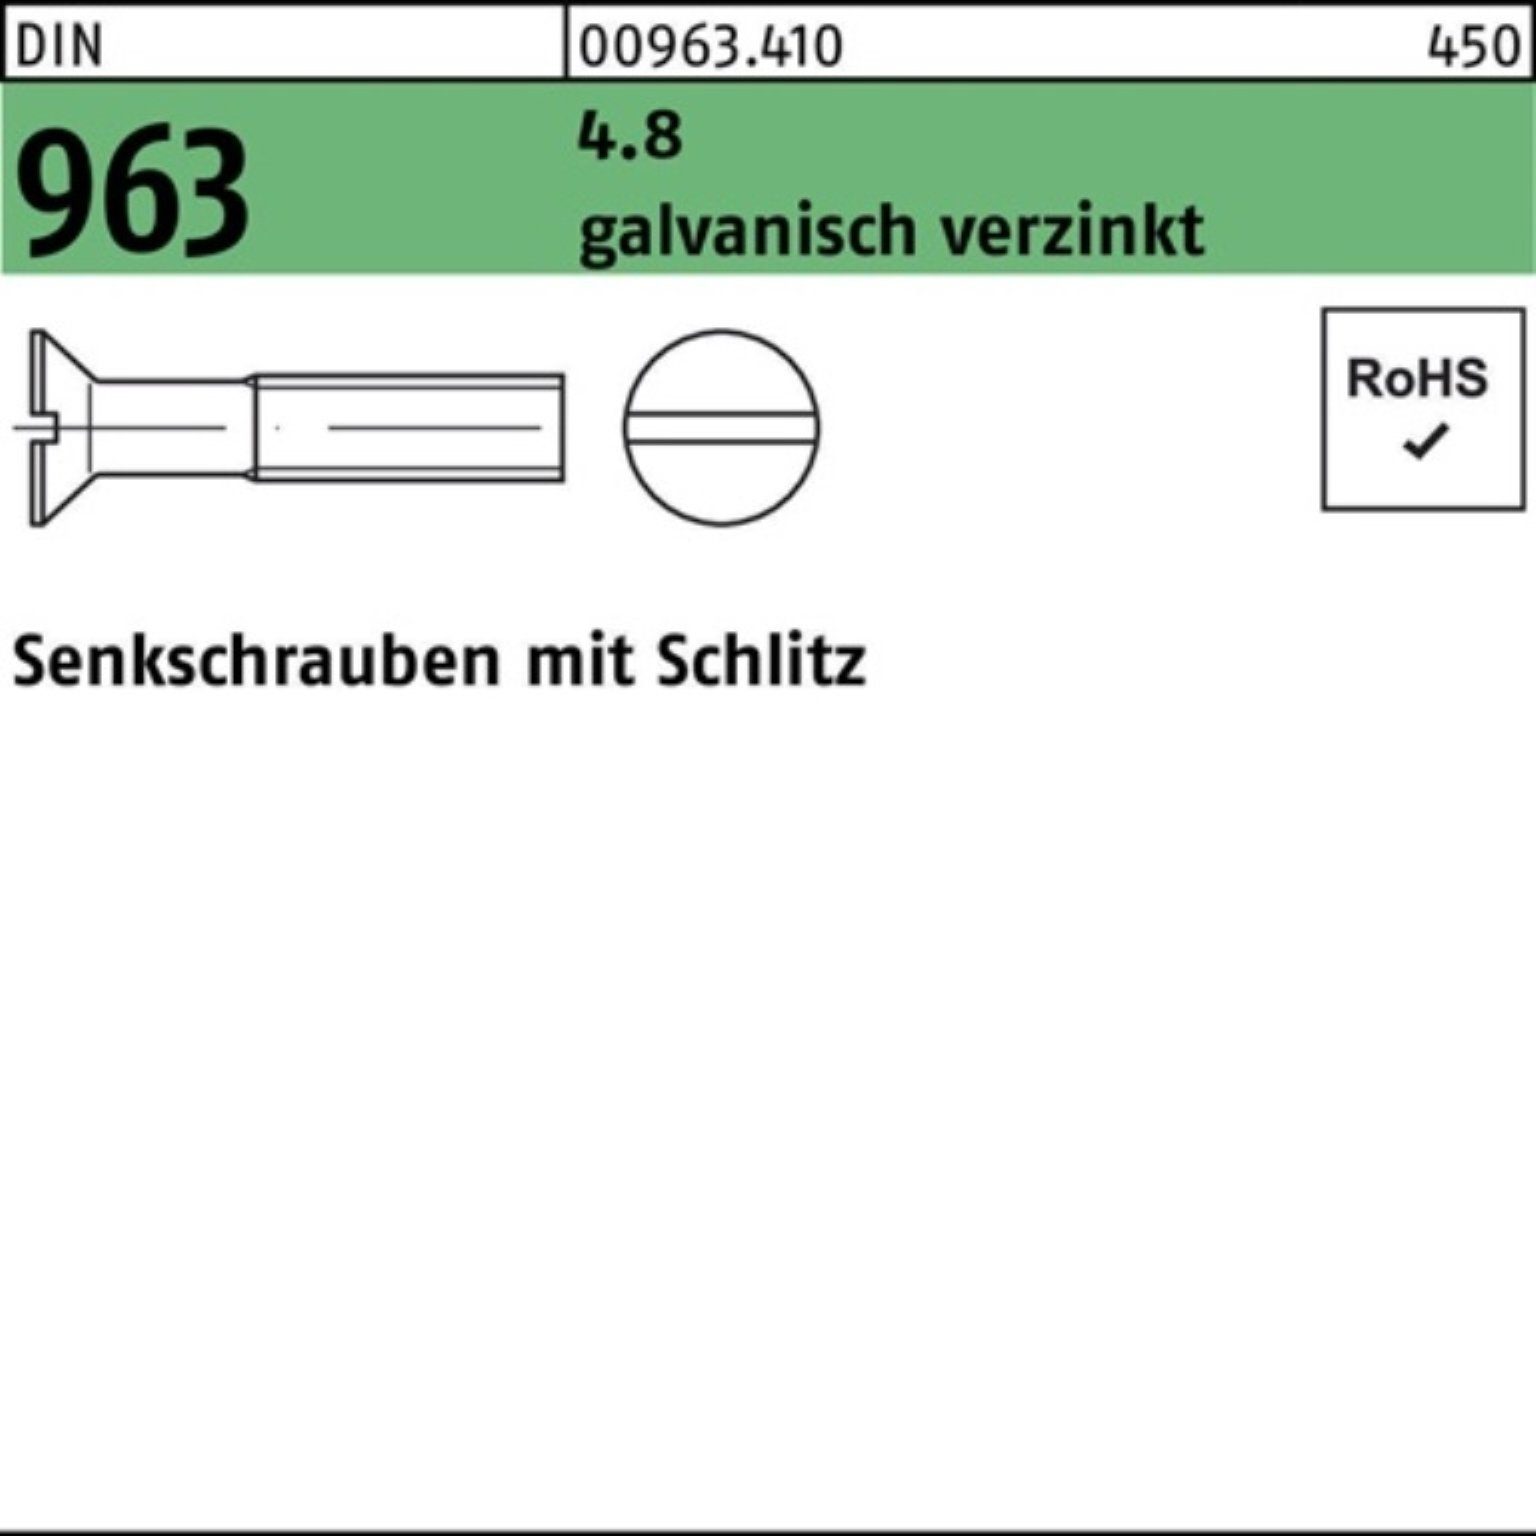 4.8 St Senkschraube Senkschraube 6 M3x DIN 2000 2000er Reyher 963 galv.verz. Schlitz Pack